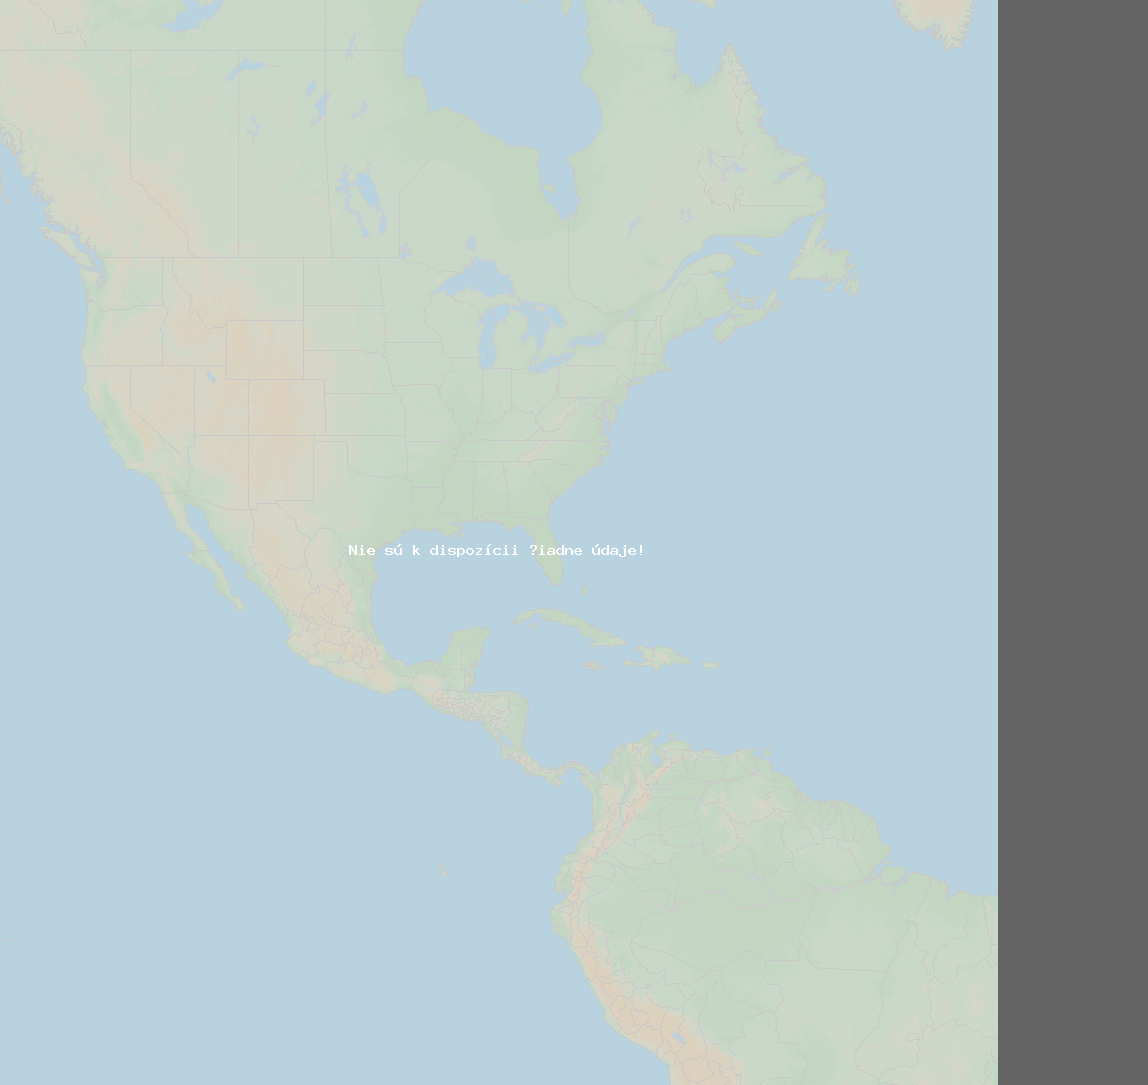 Pomer bleskov (Stanica Sept-Iles QC) North America 2020 Február